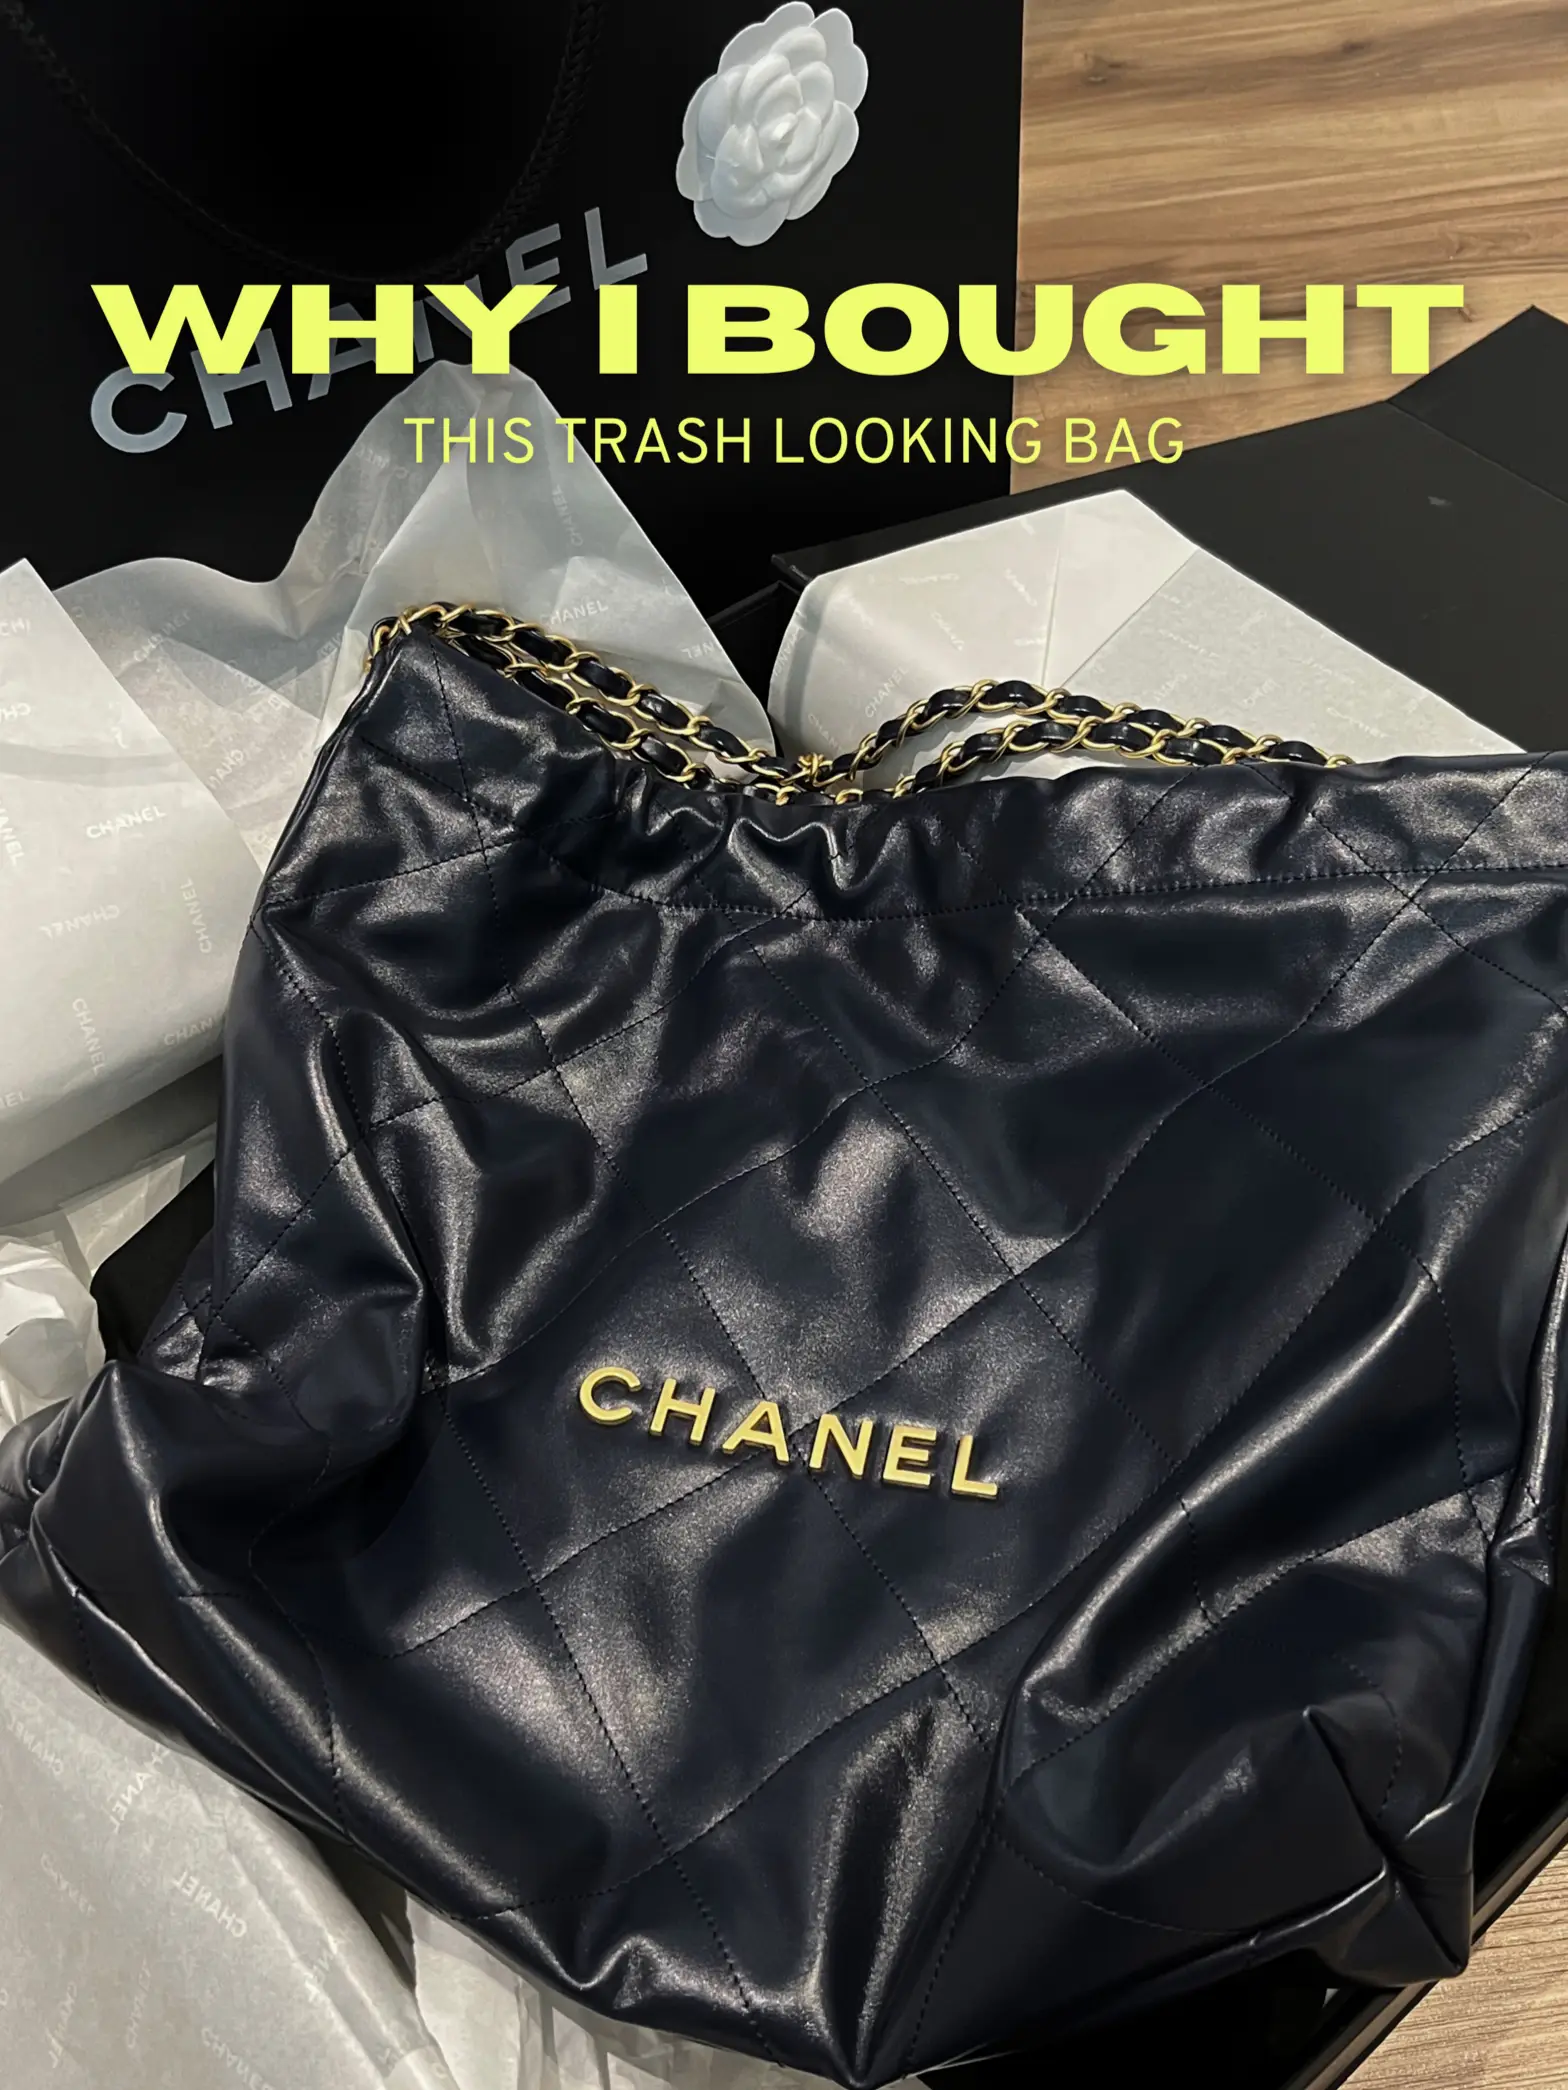 CHANEL HAUL, Makeup, Chanel VIP Tote Bag